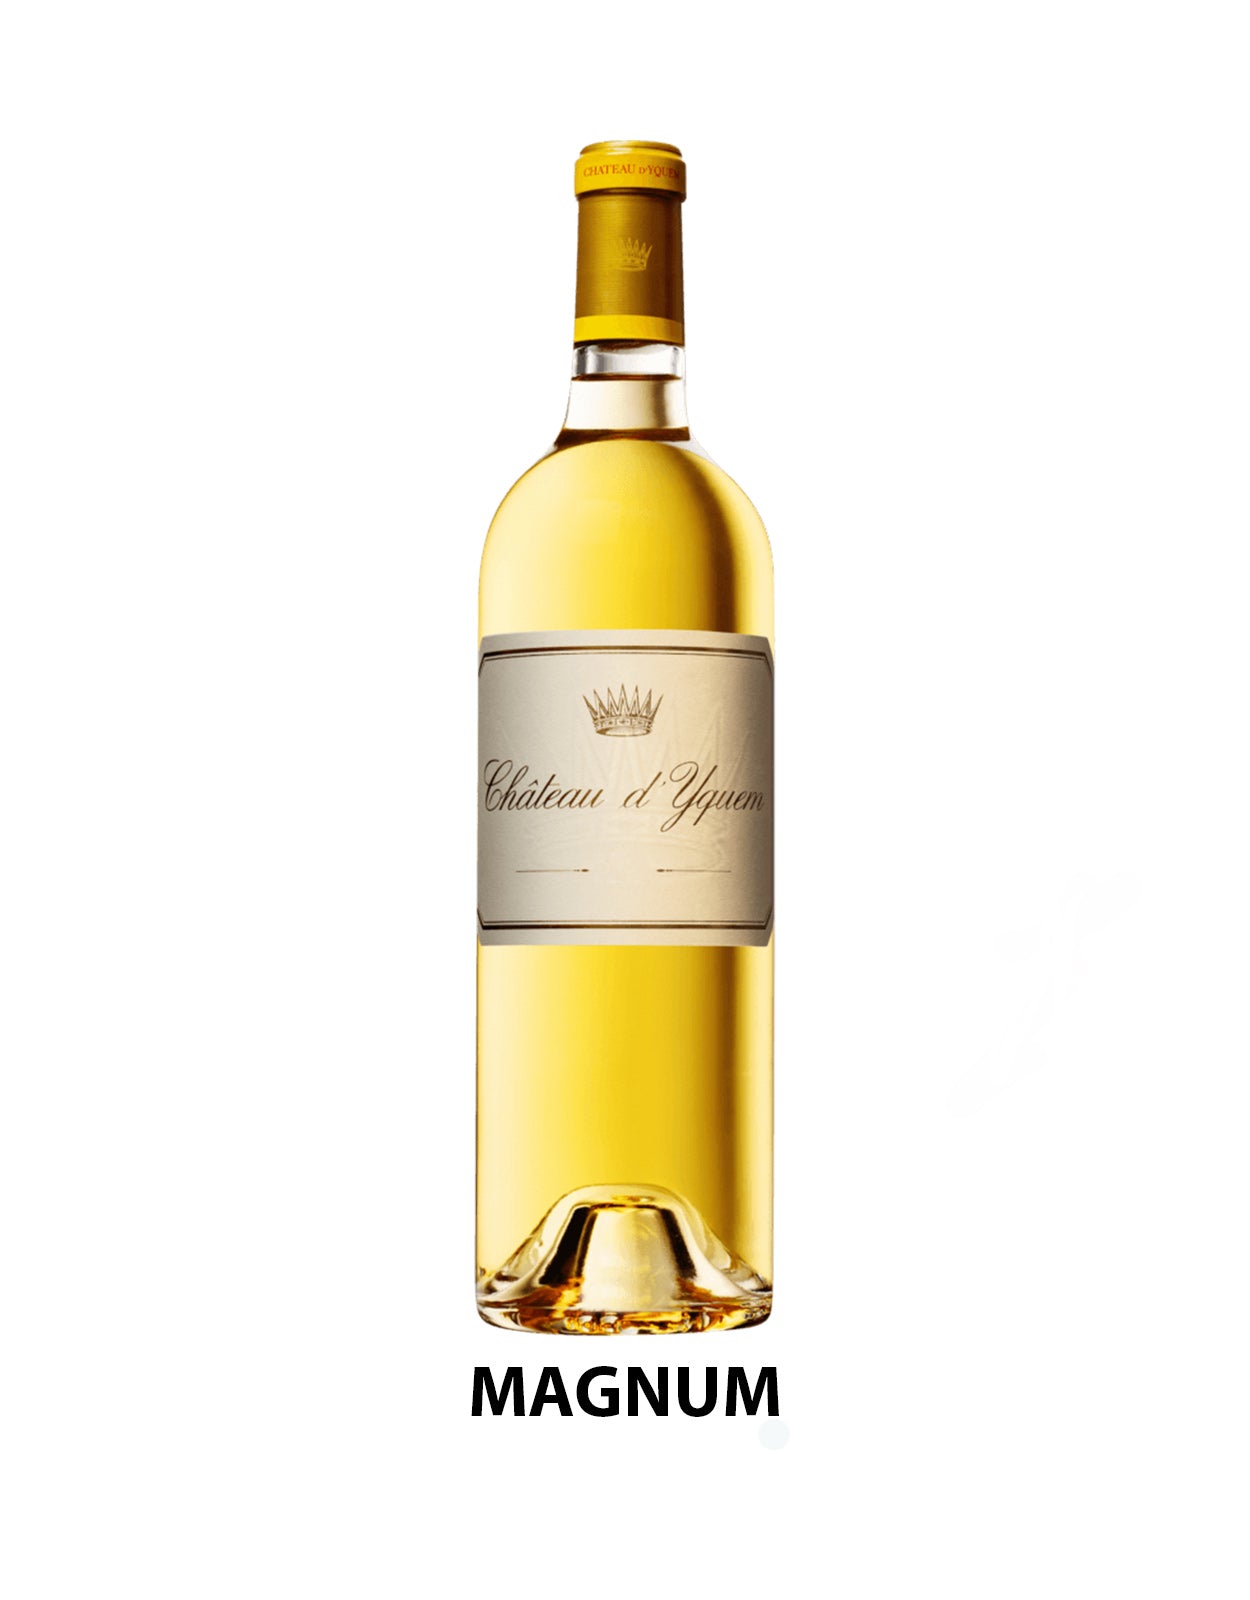 Chateau d'Yquem 2019 - 1.5 Litre Bottle